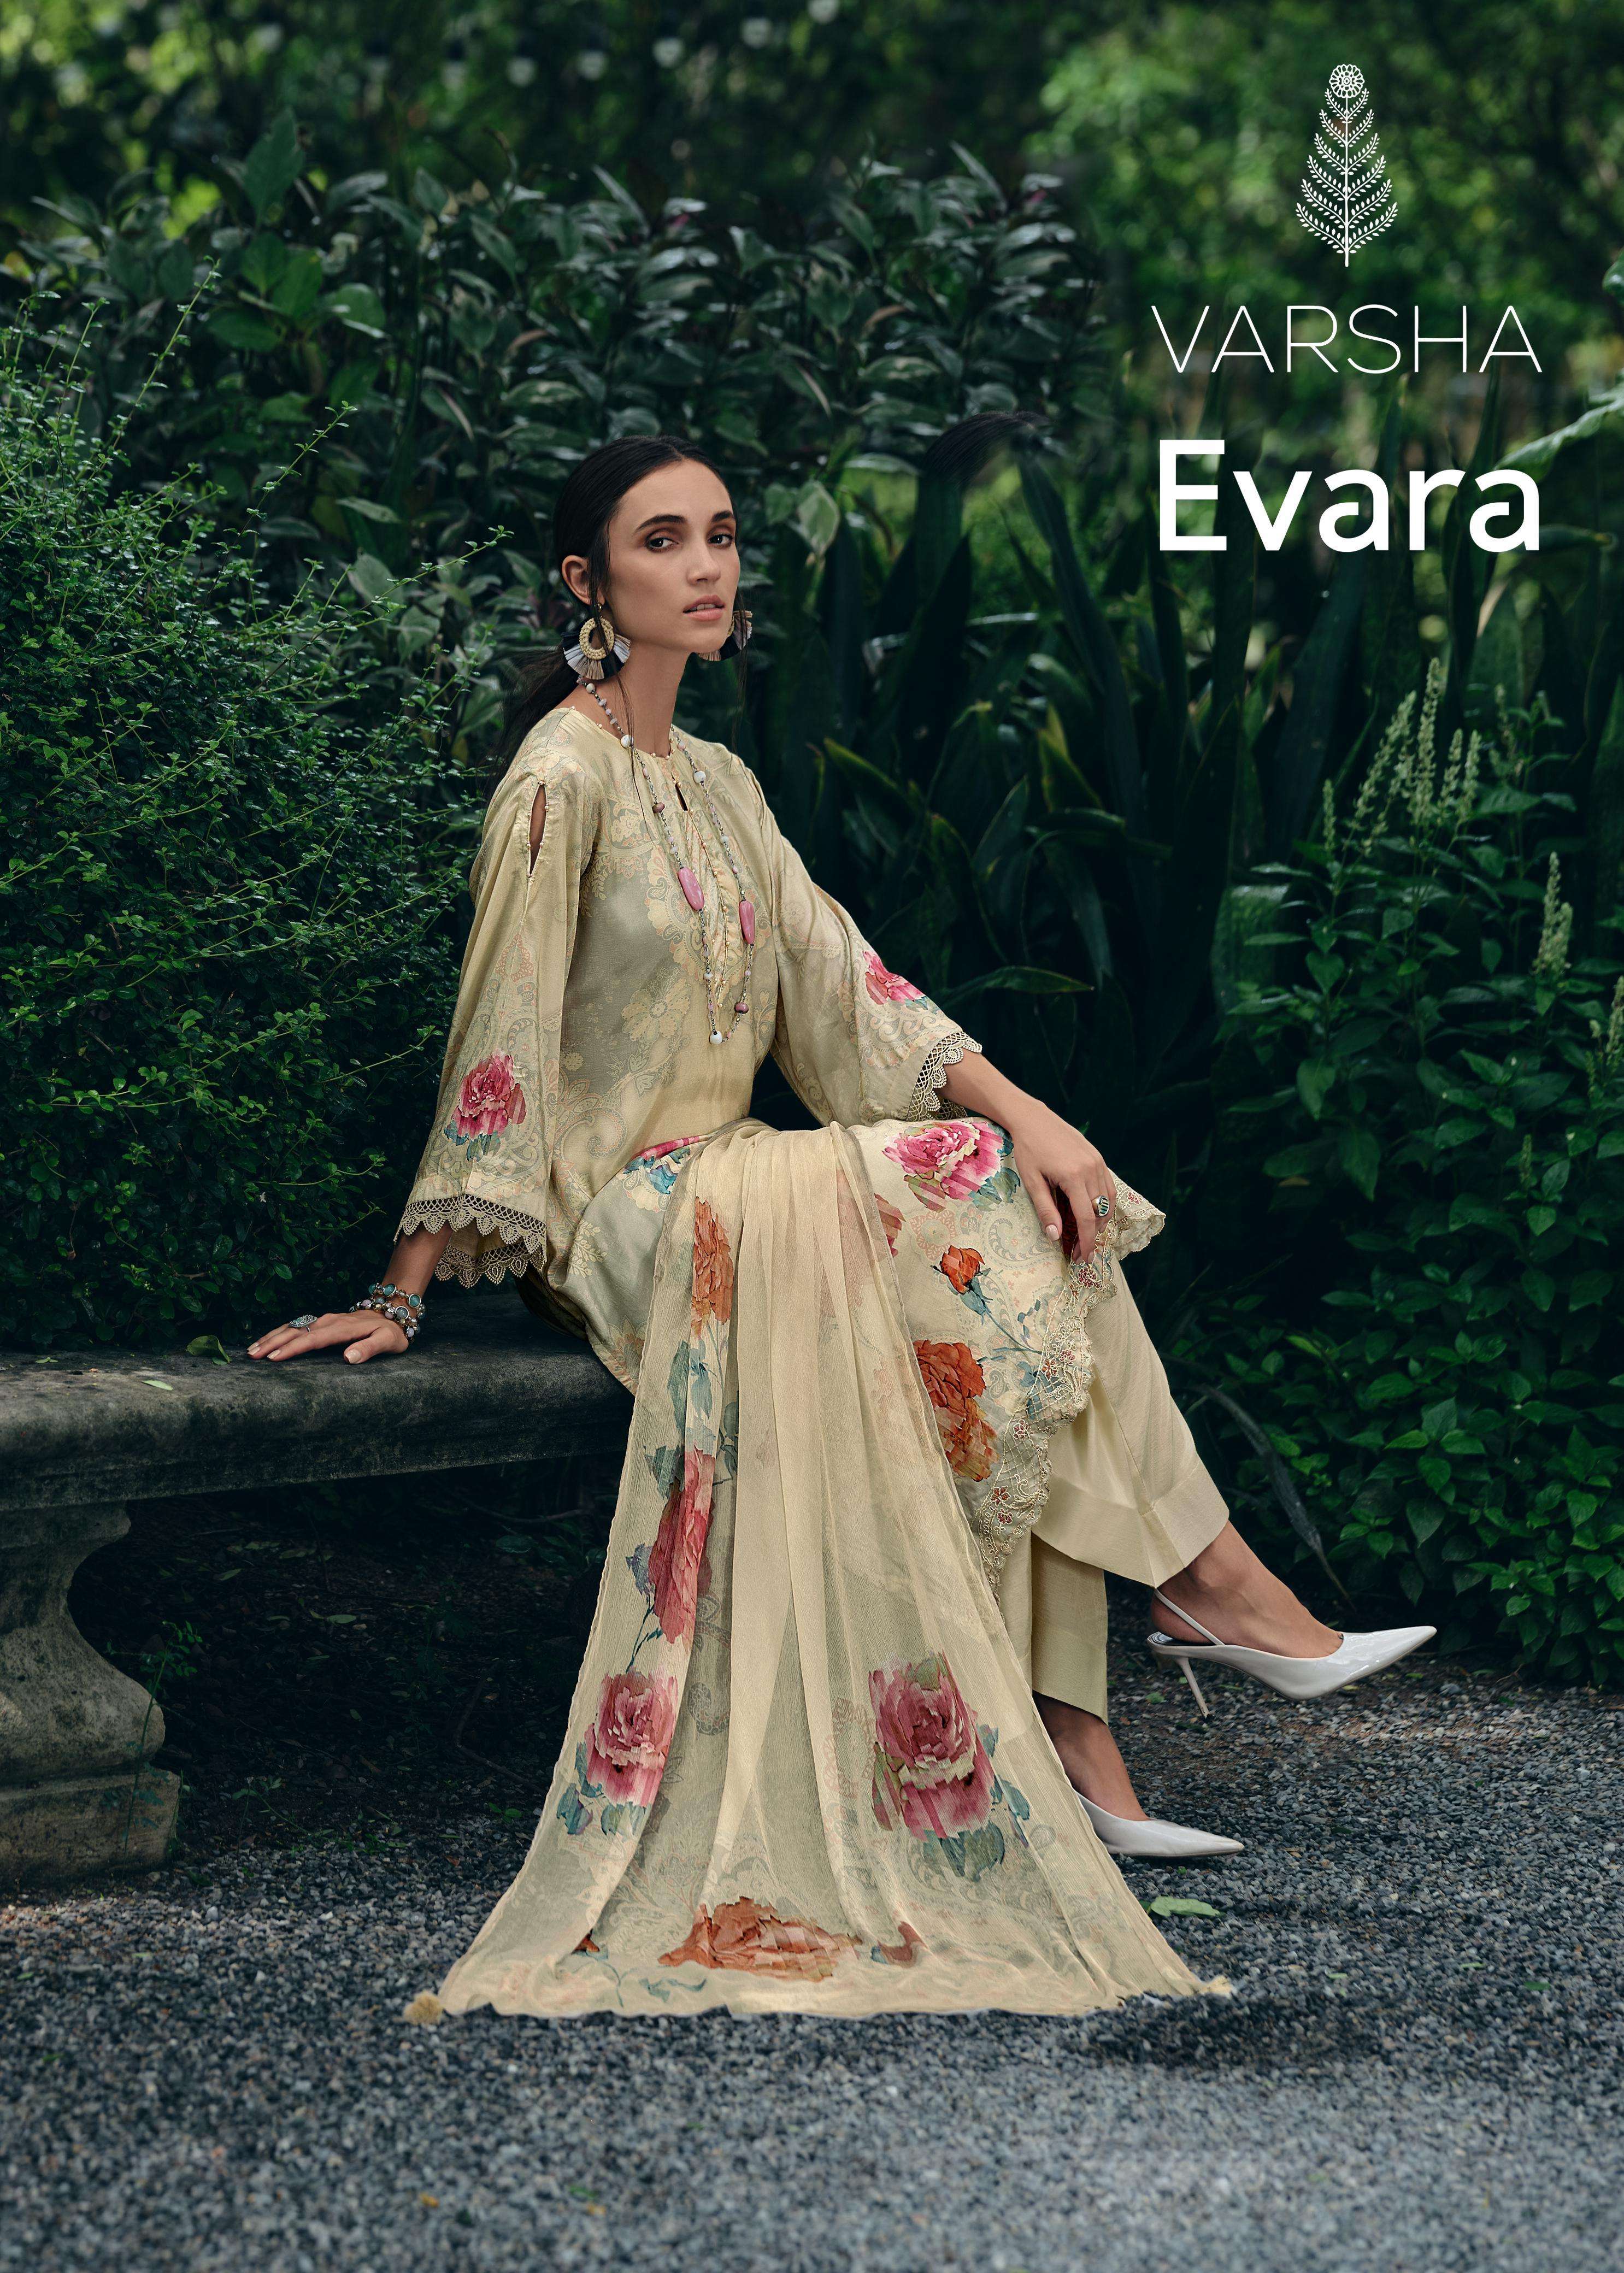 evara by varsha fashion exclusive designer salwar kameez catalogue set to set wholesale rate surat gujarat